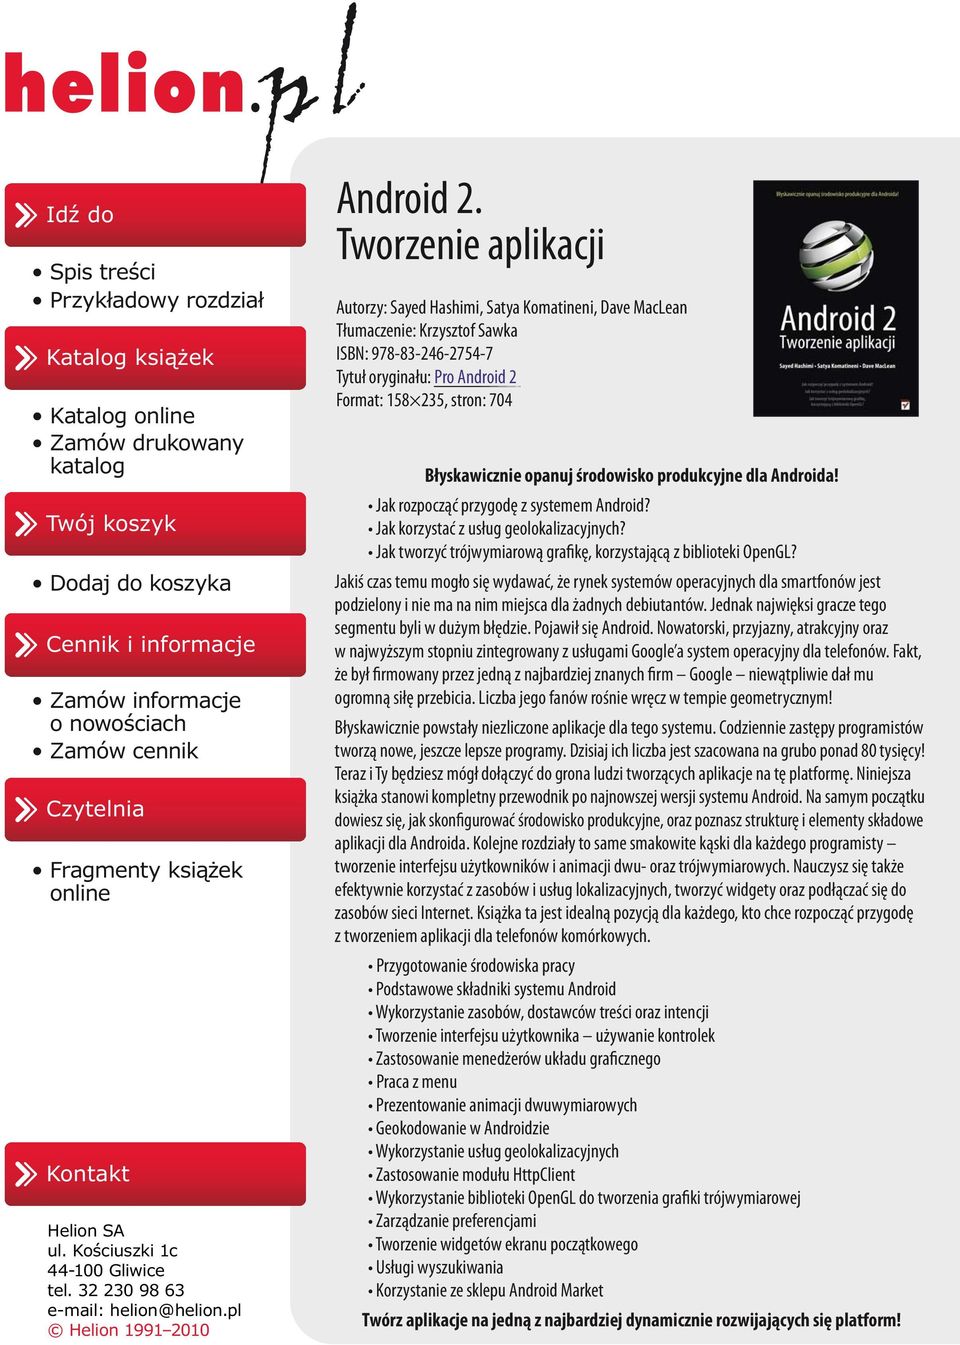 Tworzenie aplikacji Autorzy: Sayed Hashimi, Satya Komatineni, Dave MacLean Tłumaczenie: Krzysztof Sawka ISBN: 978-83-246-2754-7 Tytuł oryginału: Pro Android 2 Format: 158 235, stron: 704